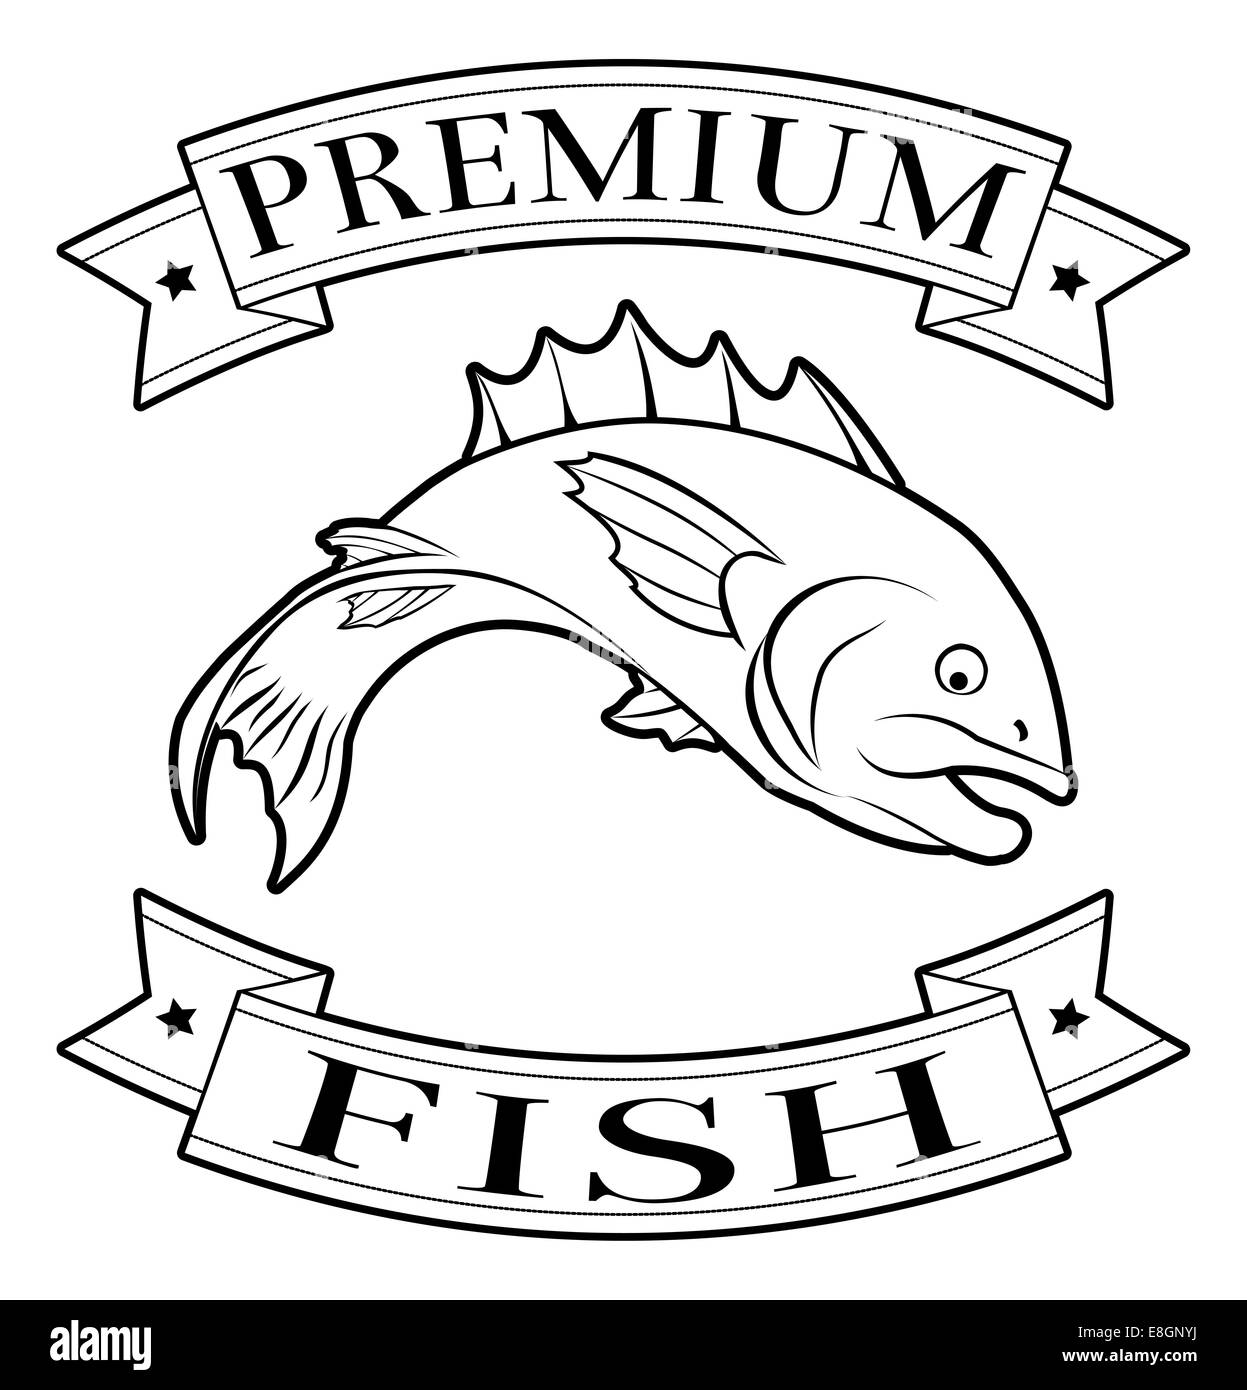 Premium-Fisch-Menü-Symbol eines Fisches und Banner in einem Stempel-Stil Stockfoto